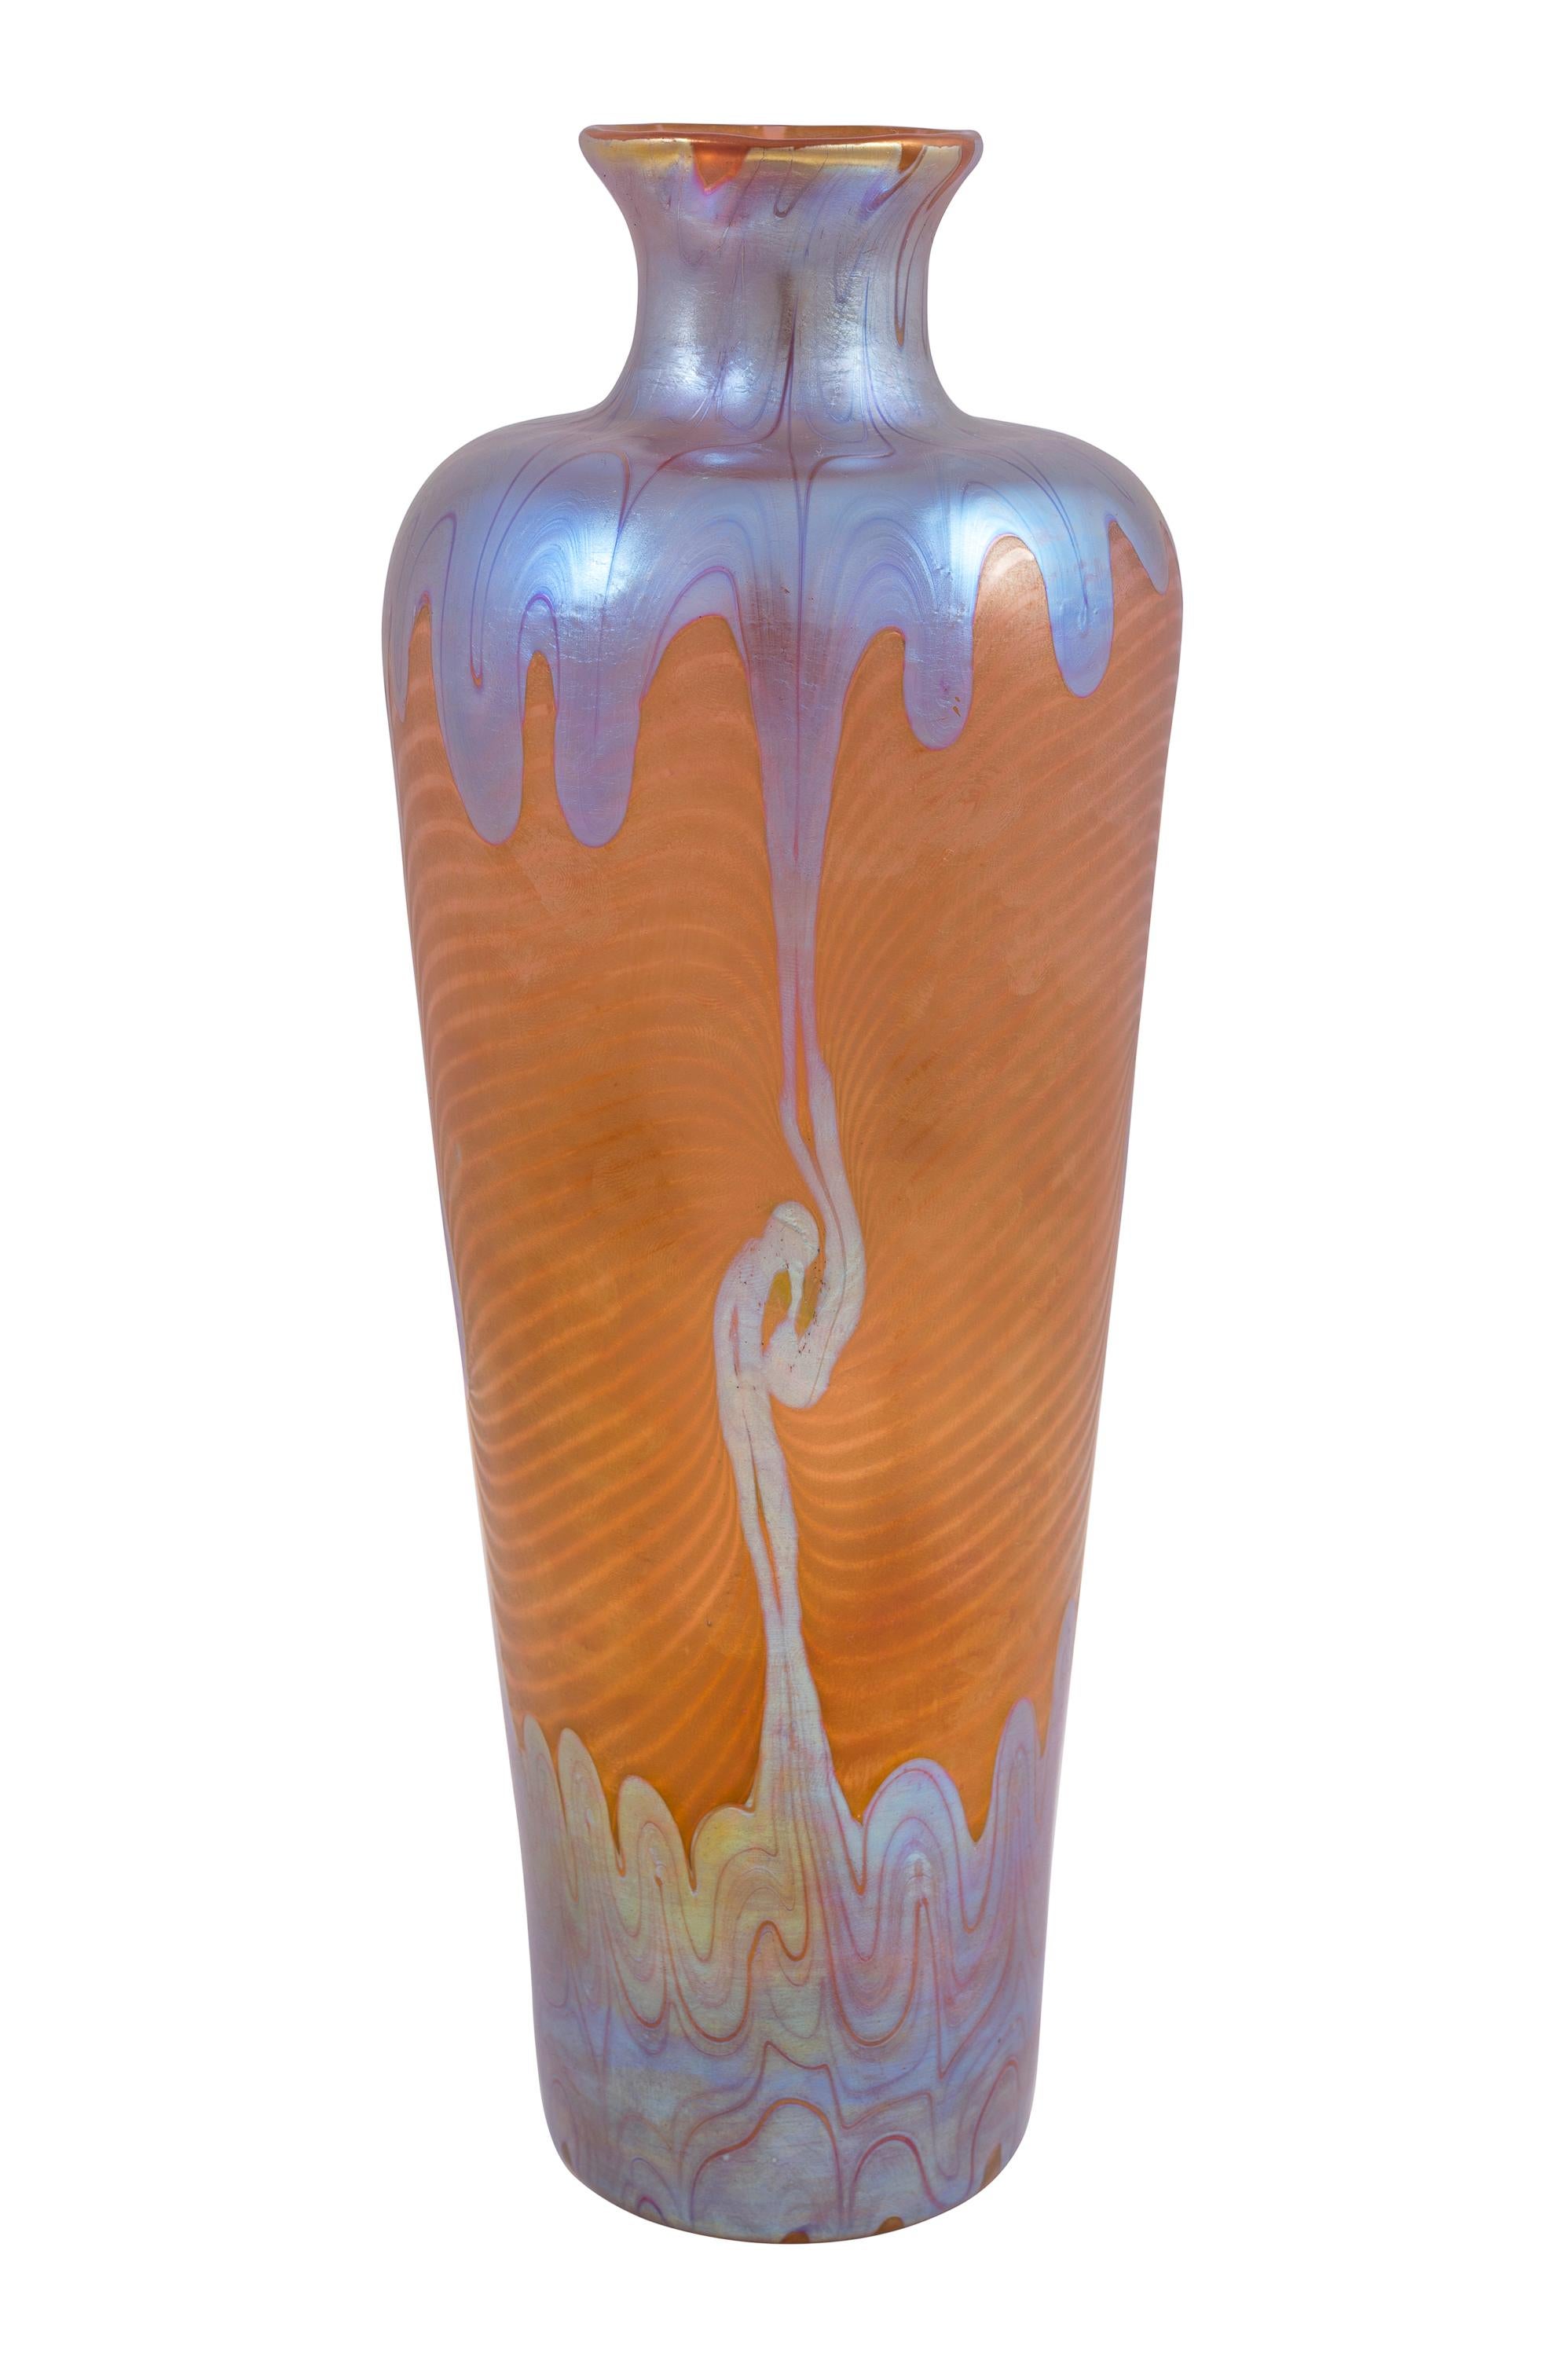 Jugendstil Glass Vase Loetz PG 1/214 Decoration circa 1901 Orange Blue Silver Art Nouveau For Sale